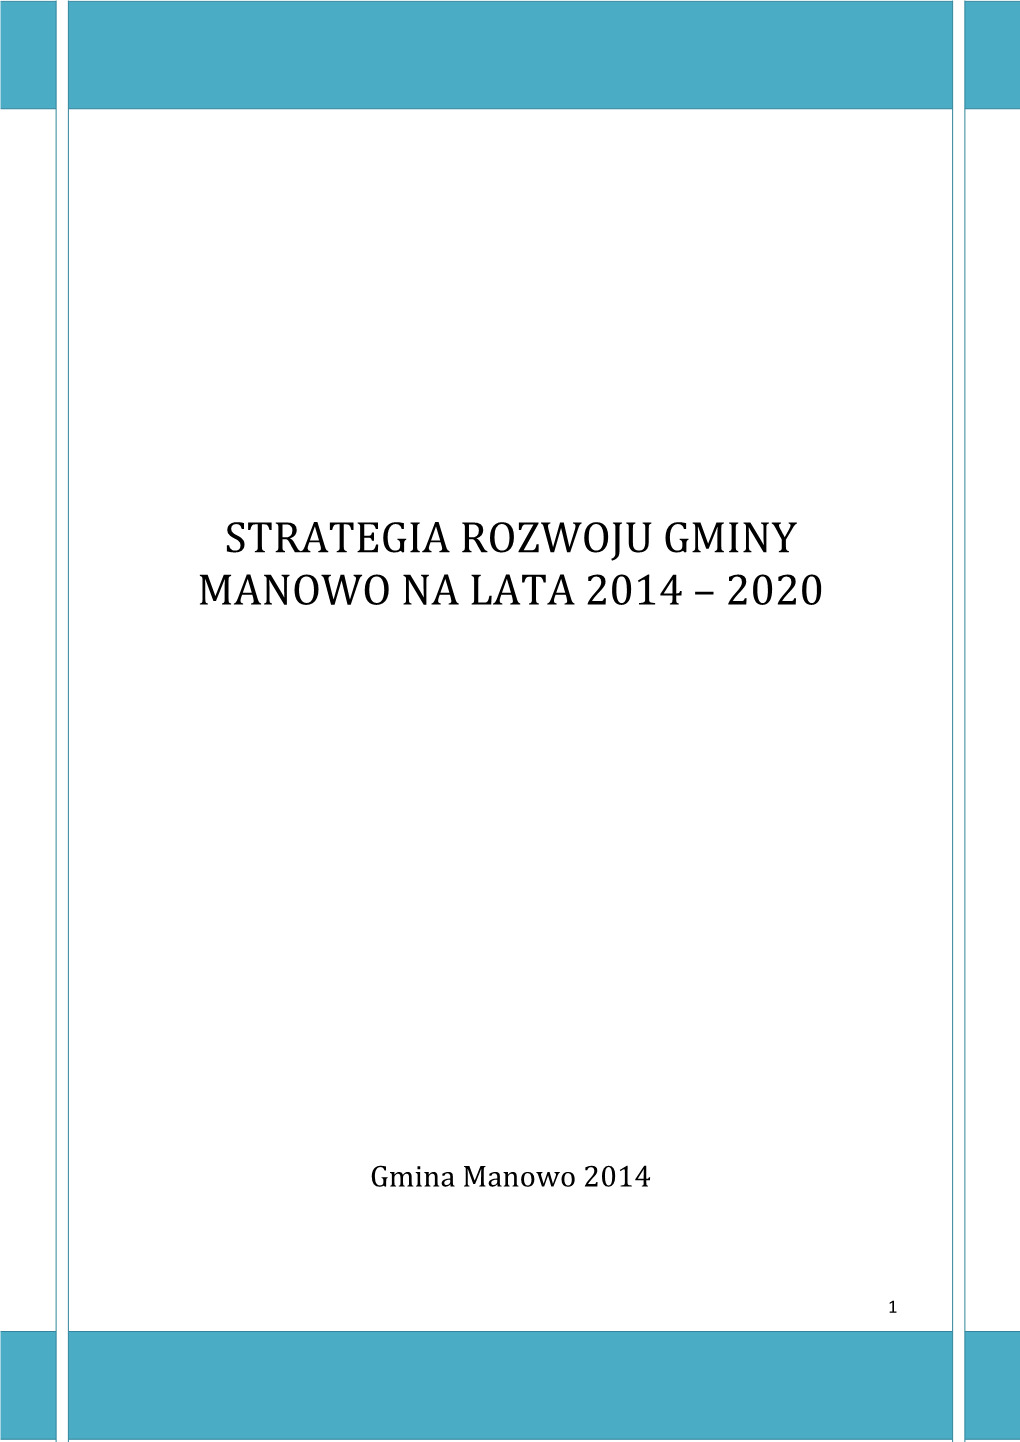 Strategia Rozwoju Gminy Manowo Na Lata 2014-2020 Jest Dokumentem Mieszkańców Gminy